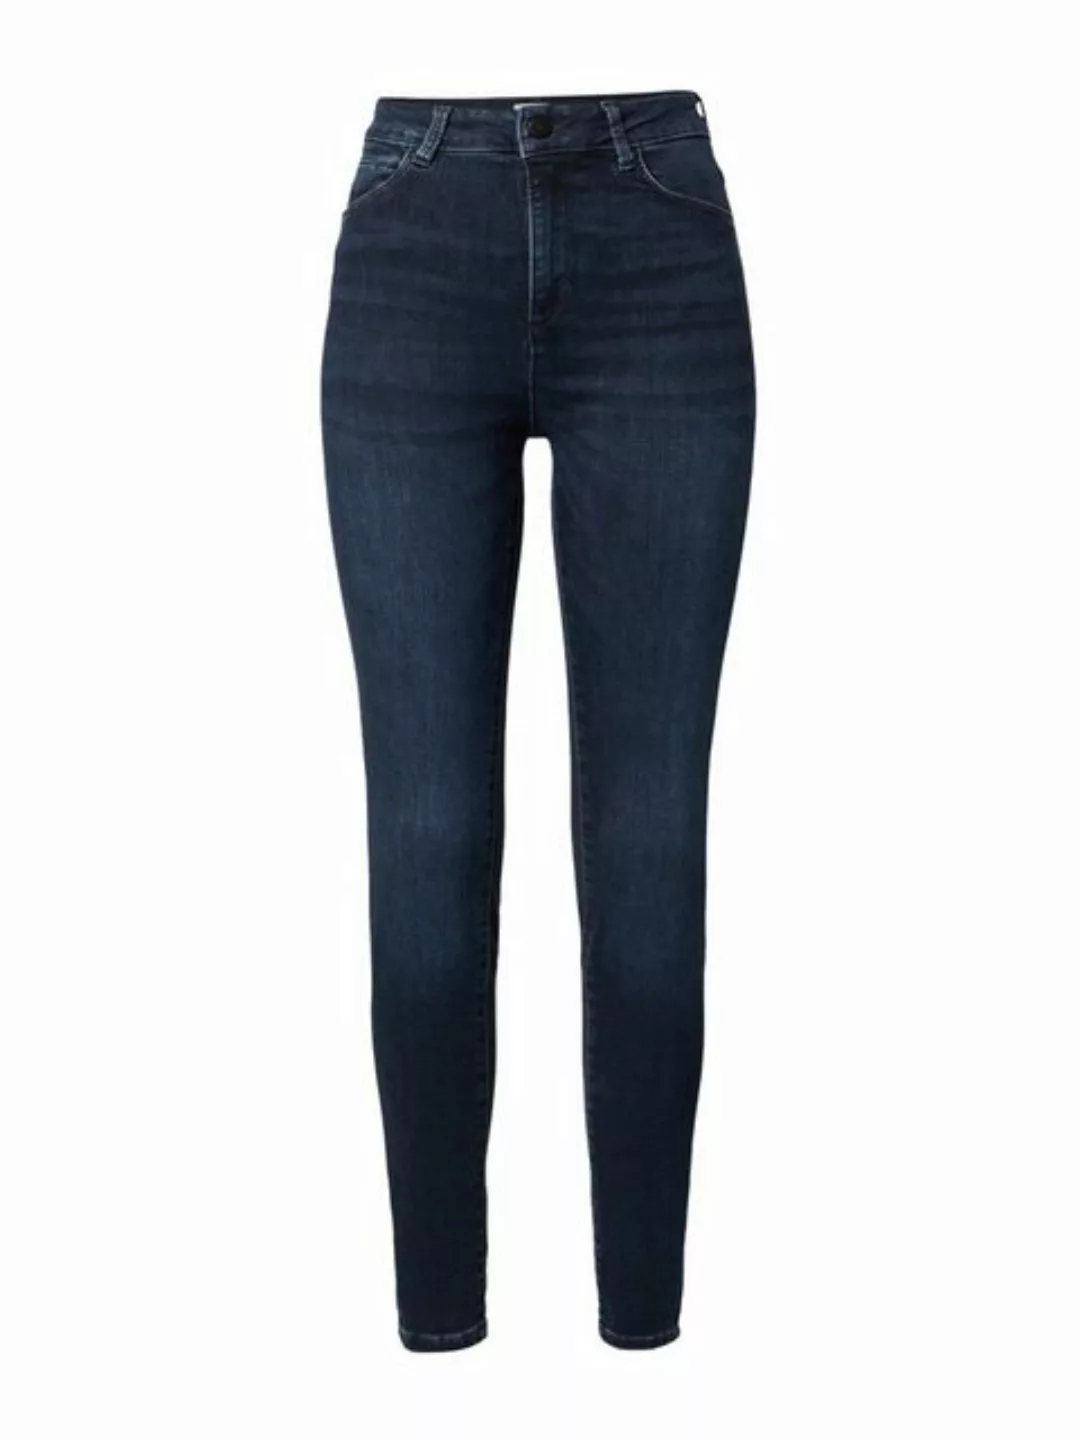 Mustang Damen Jeans GEORGIA Super Skinny Fit - Blau - Dark Blue Denim günstig online kaufen